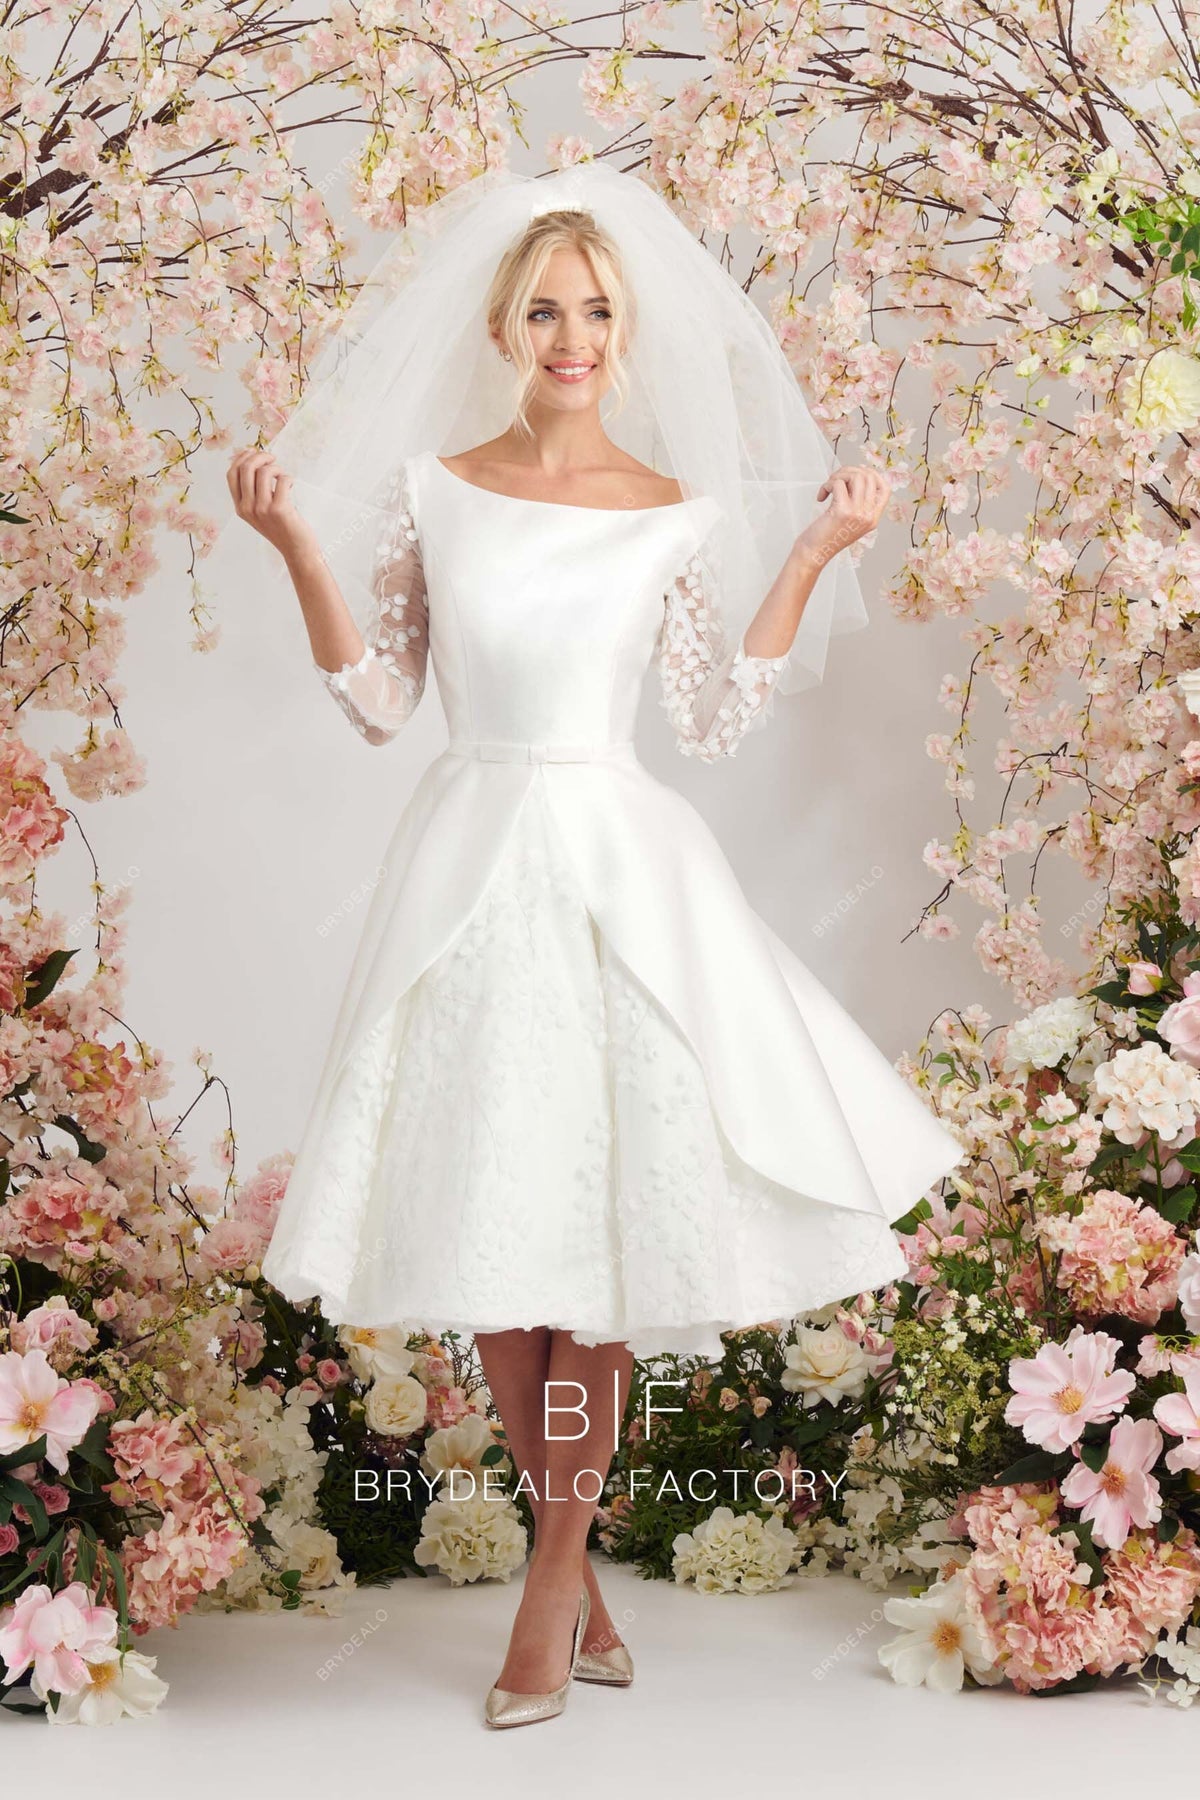 Elegant Satin Bateau Neckline Lace Short Tea Length Bridal Dress Vintage Style Puffy Aline Skirt Wedding Dress Boatneck Open Back Pockets